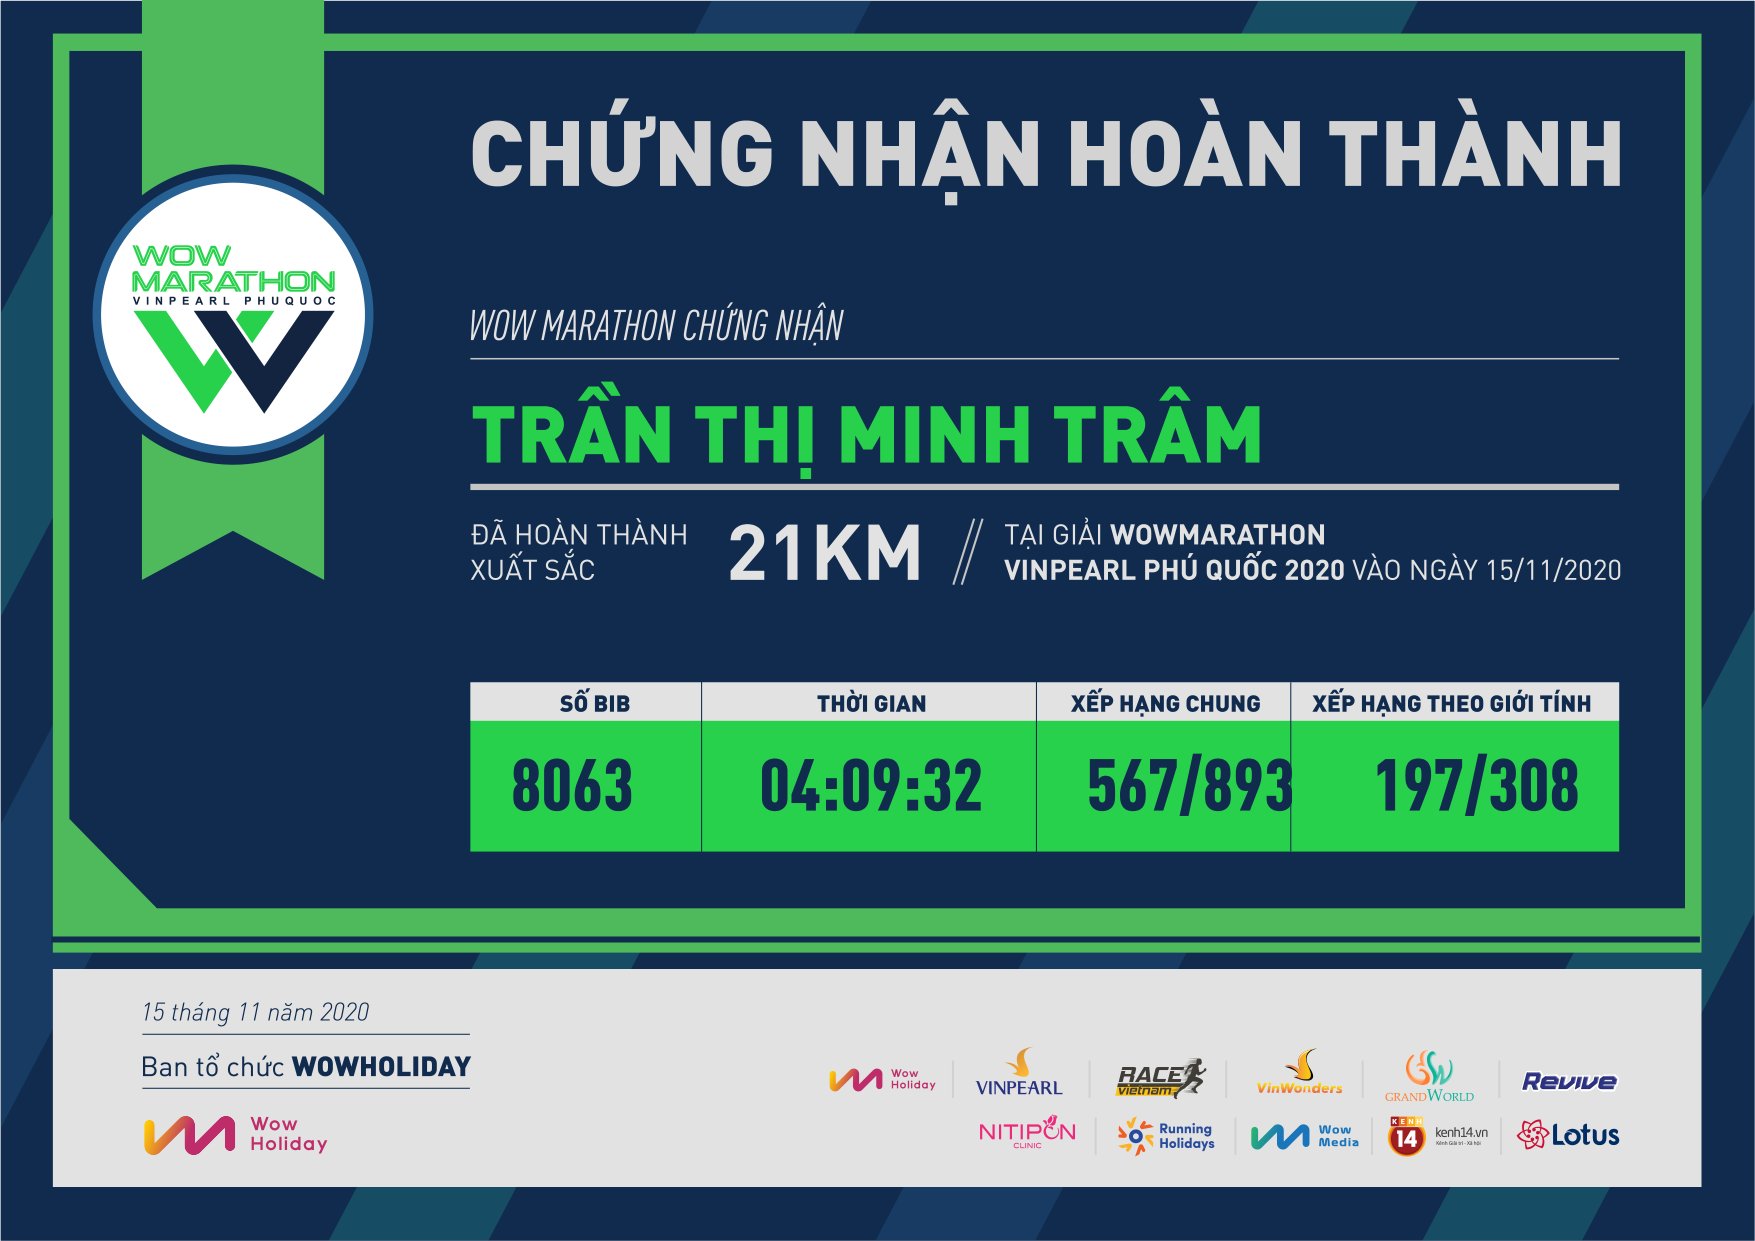 8063 - Trần Thị Minh Trâm